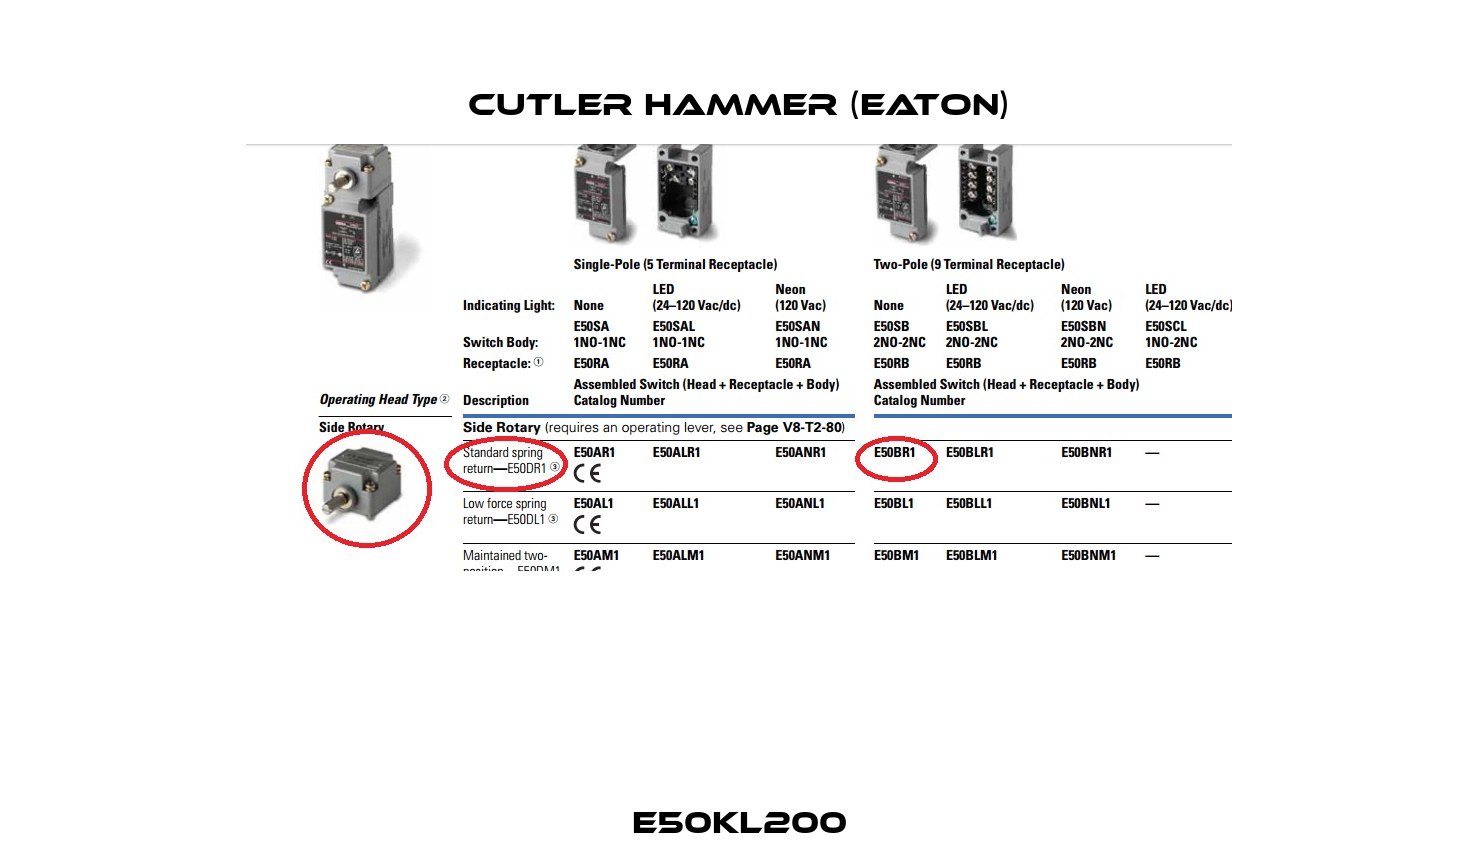 E50KL200 Cutler Hammer (Eaton)